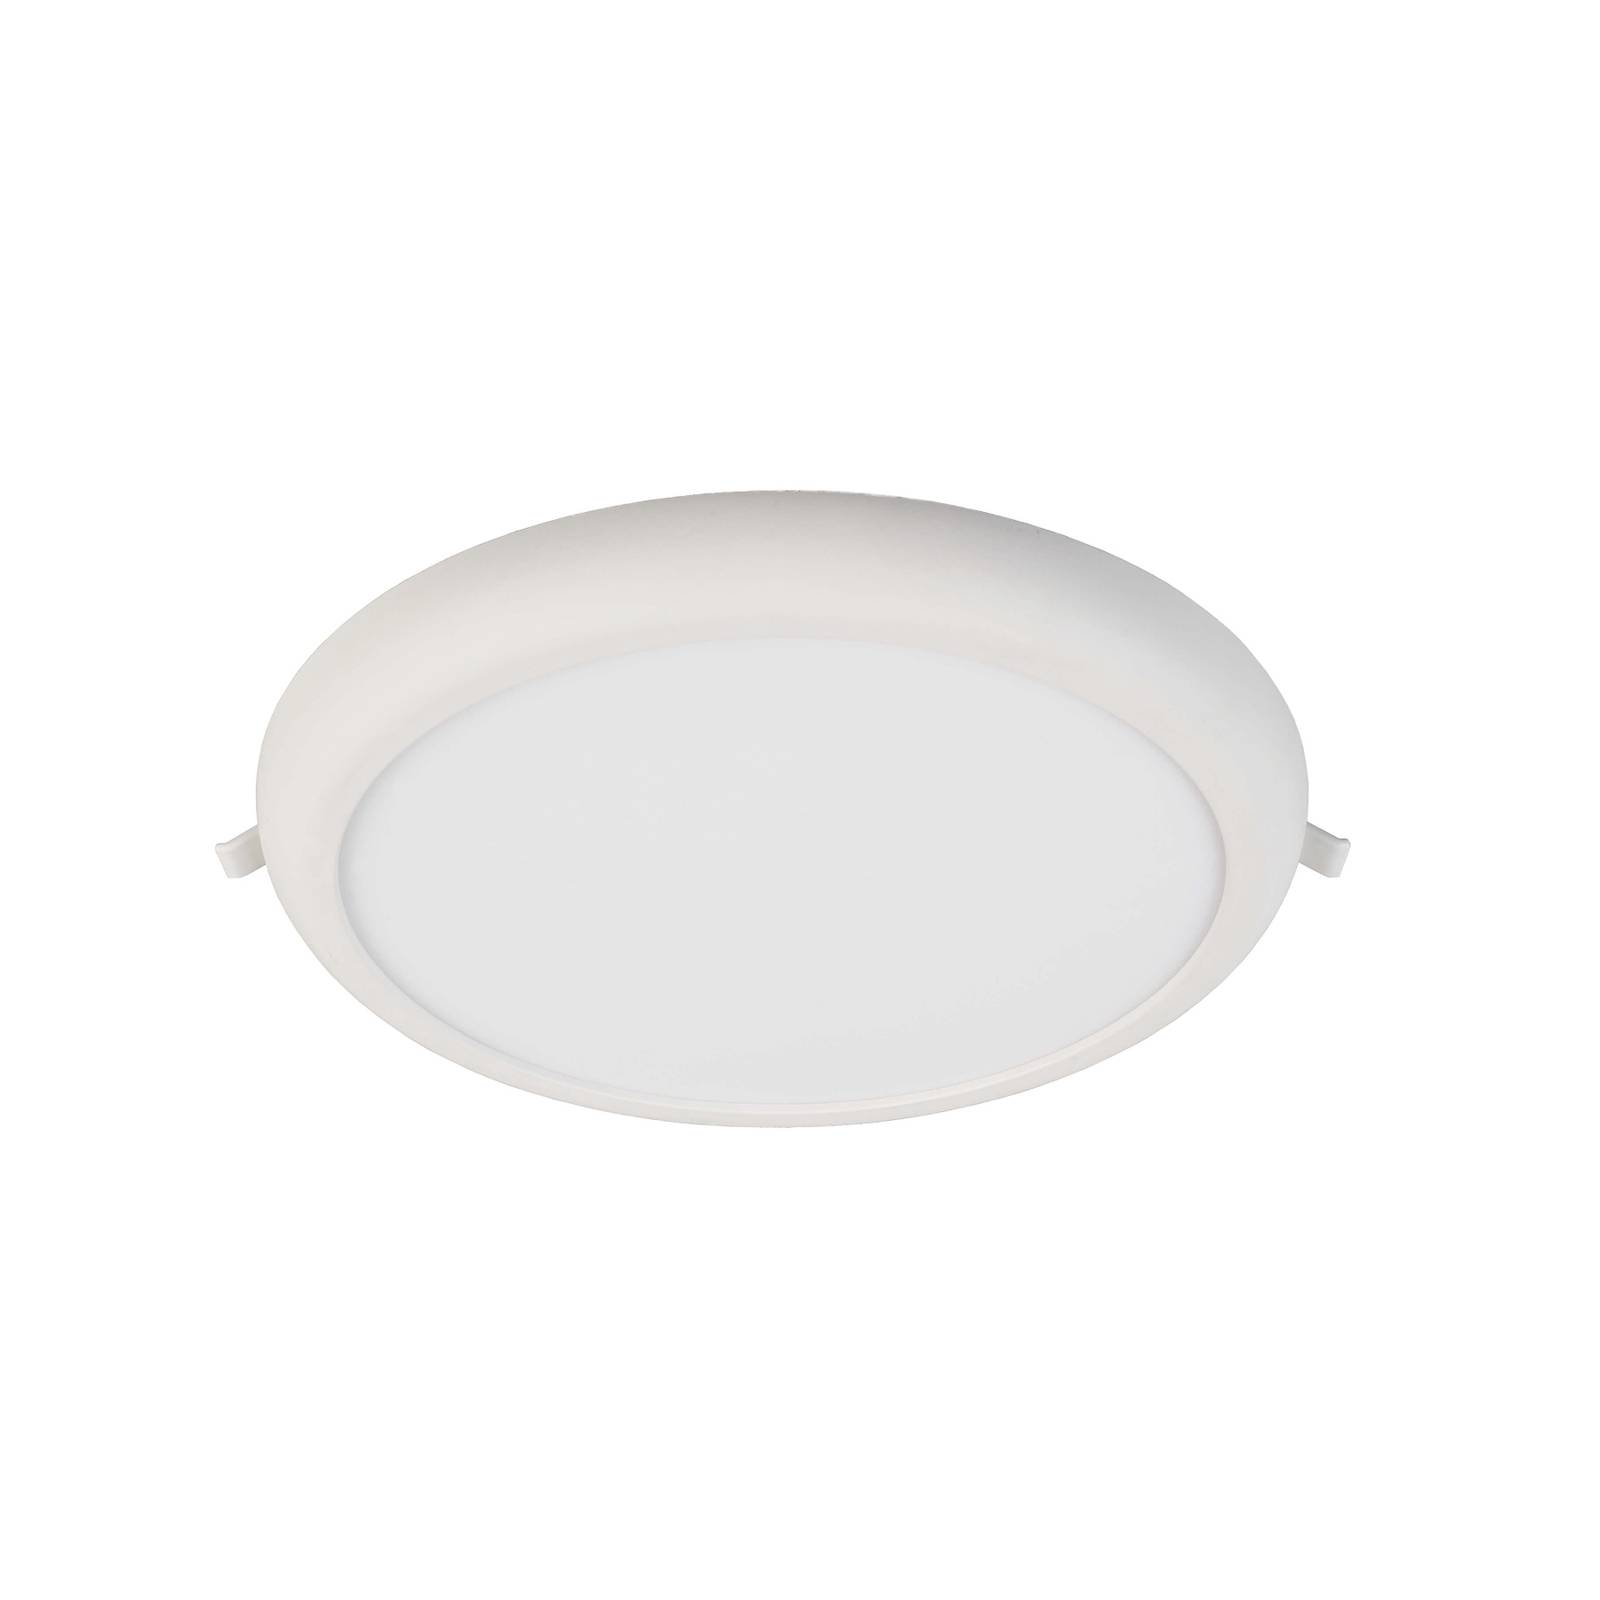 Deko-Light LED-Deckeneinbauleuchte Zaurak, weiß, rund Ø 30 cm